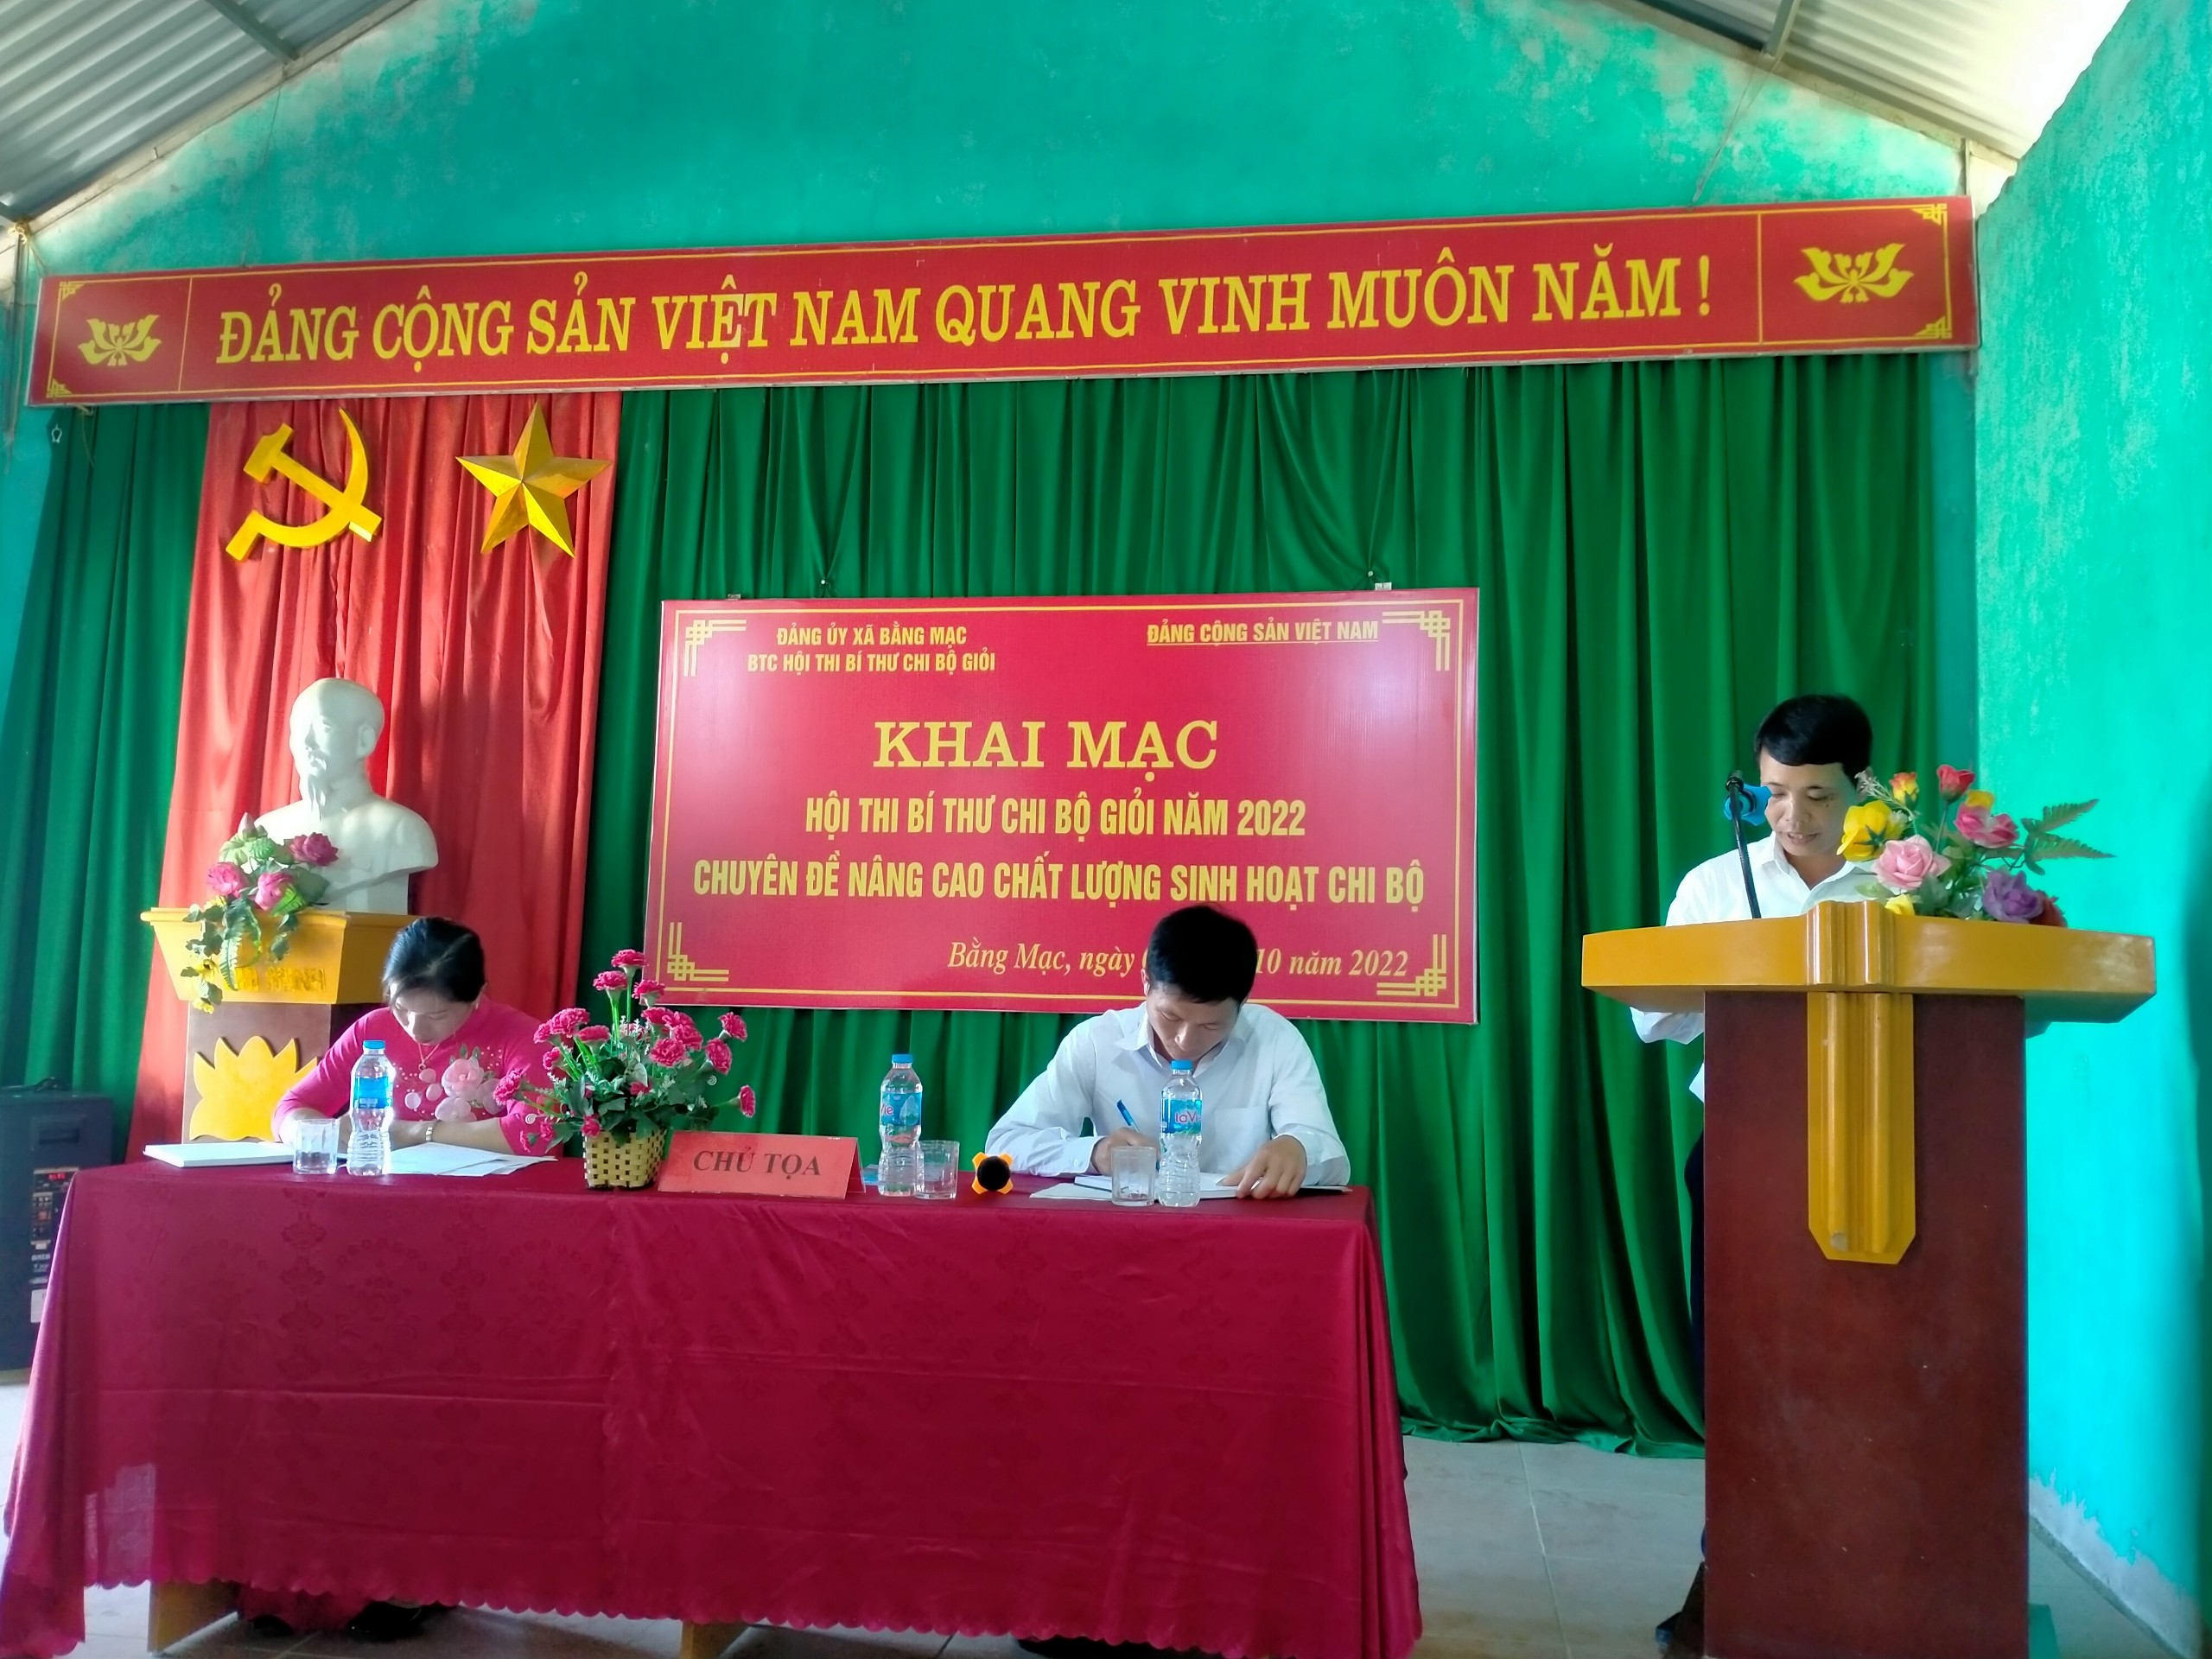 Phần dự thi của số báo danh số 01 đồng chí Hoàng Văn Tuyền Bí thư Chi bộ thôn Làng Khoác.